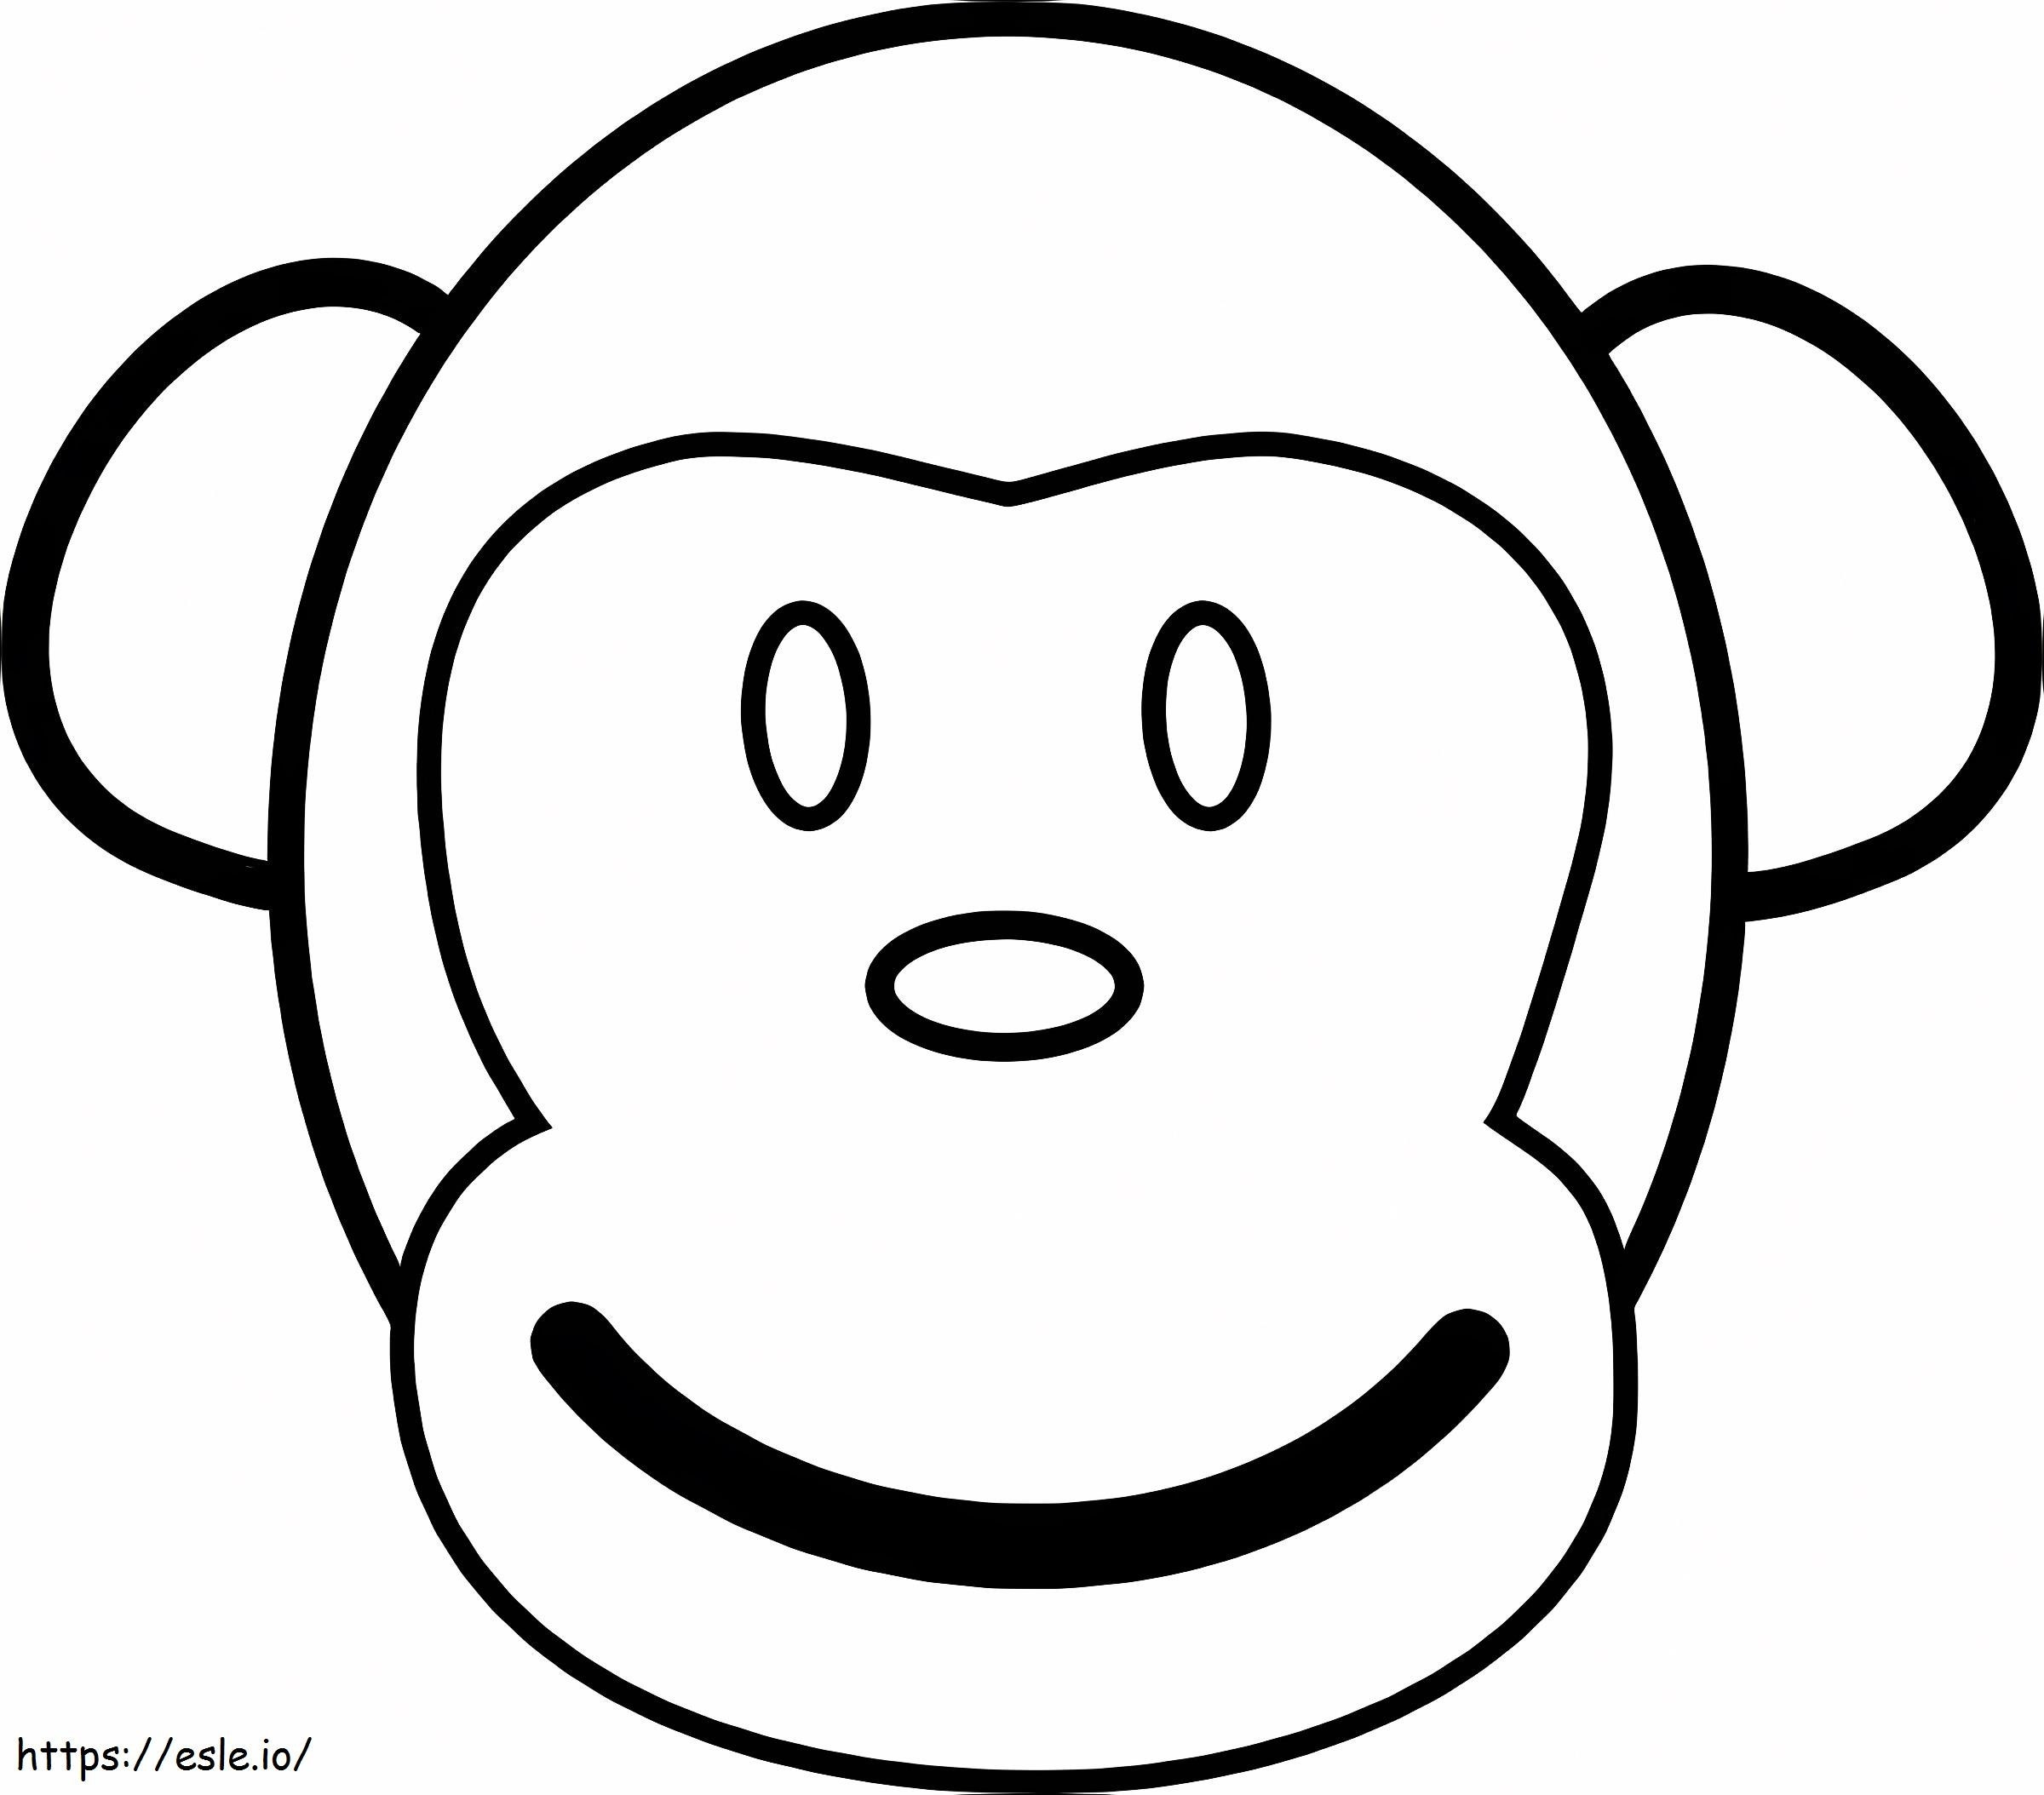 Cara de mono fácil para colorear